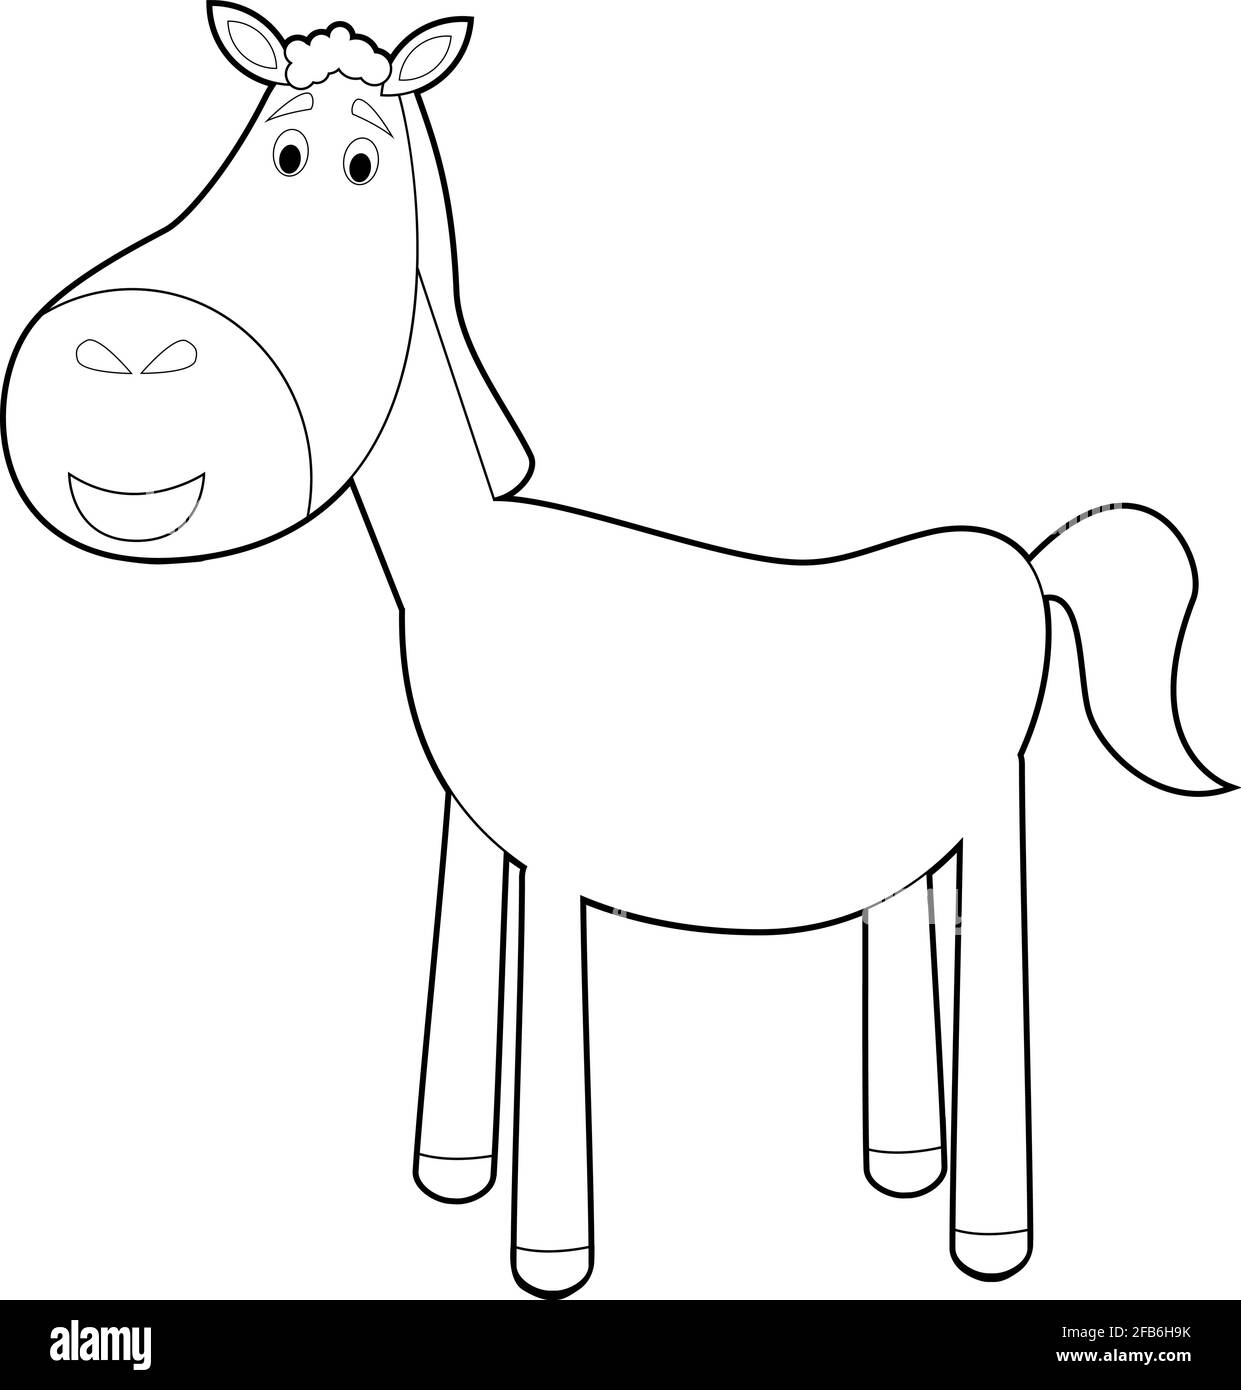 Disegni facili da colorare di animali per bambini piccoli: Cavallo Immagine  e Vettoriale - Alamy